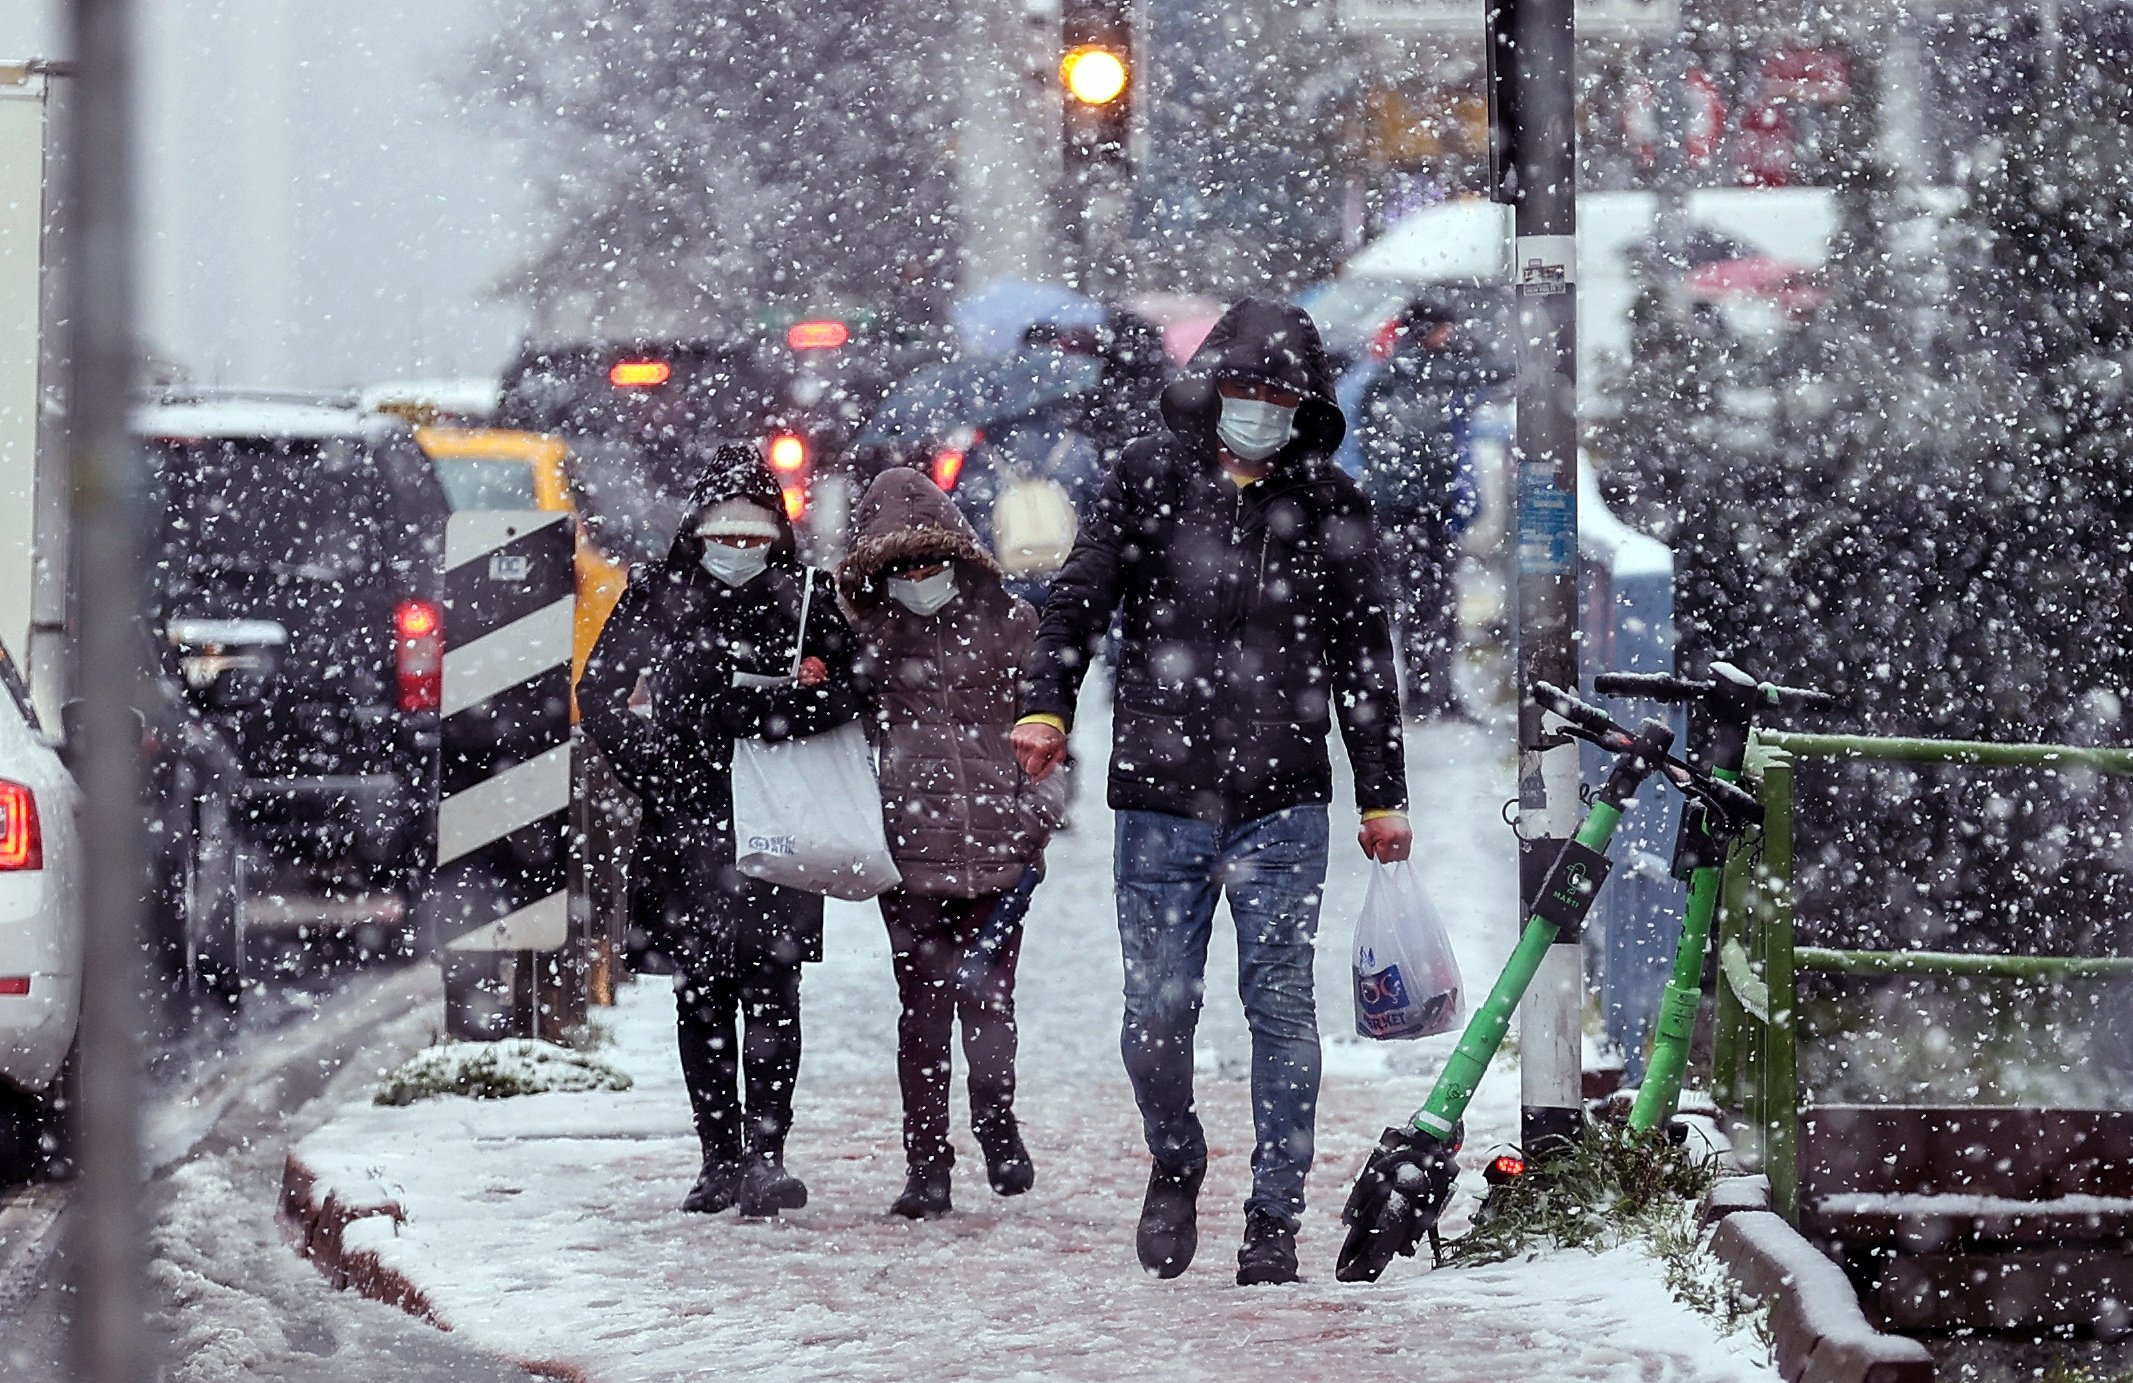 Konya'da okullar tatil mi? 10 Şubat Perşembe Konya'da okullar kar tatili mi olacak? Hangi ilçelerde okullar tatil?